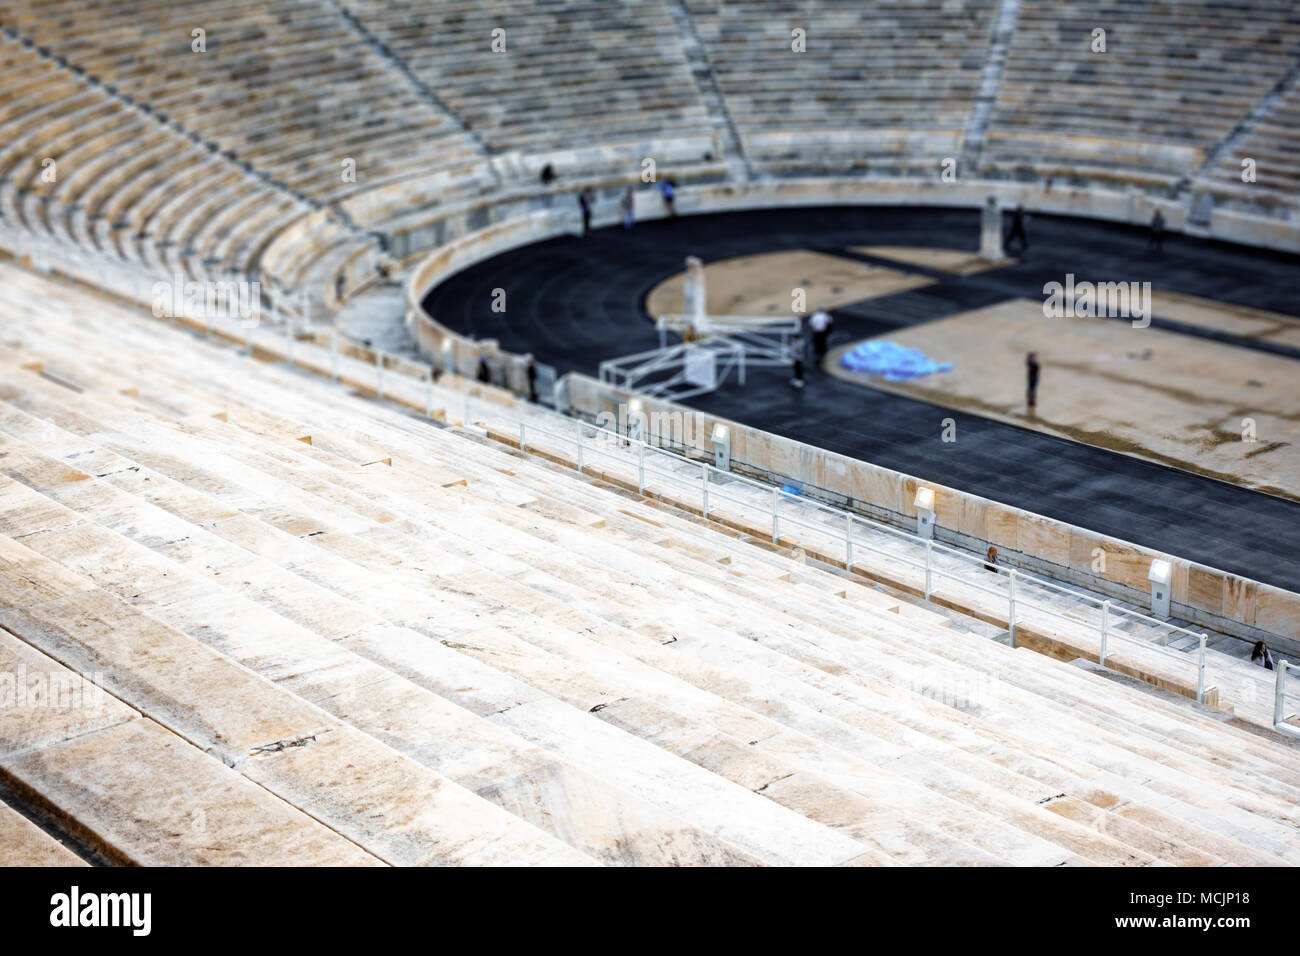 Portrait de sièges du stade Panathinaiko, Athènes, Grèce, Europe Banque D'Images